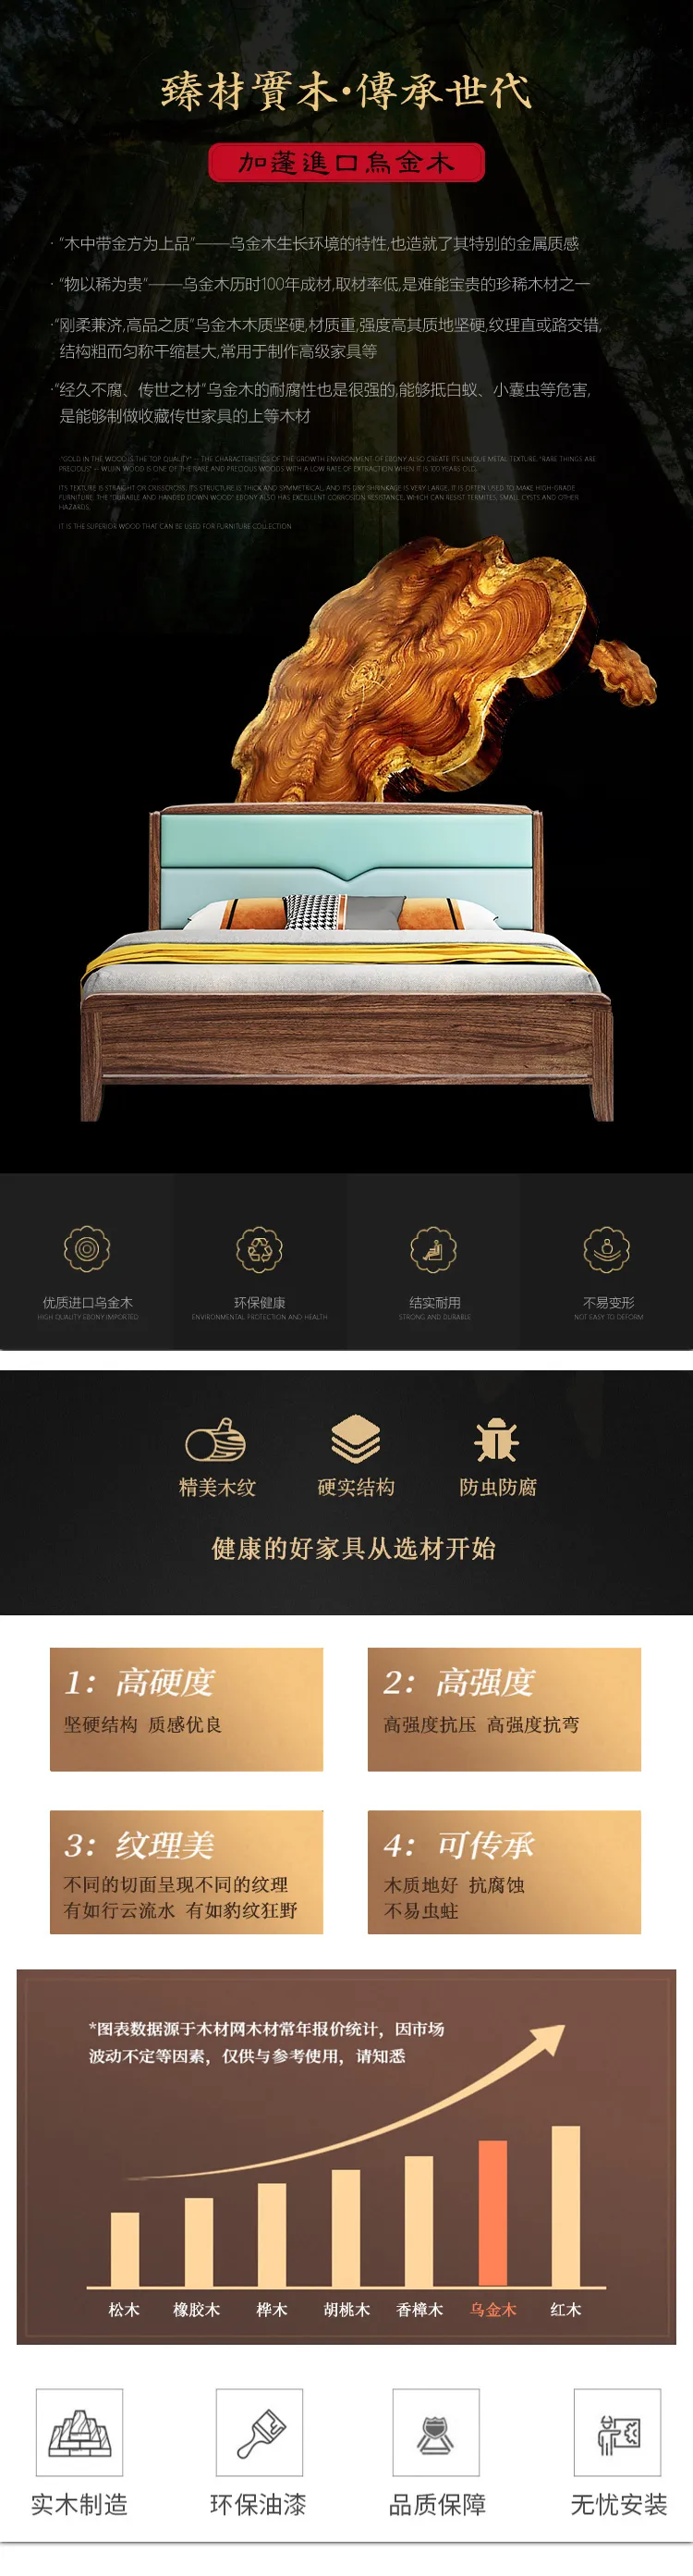 华松居 现代中式乌金木实木床1.8m双人床现代简约 #653(图2)